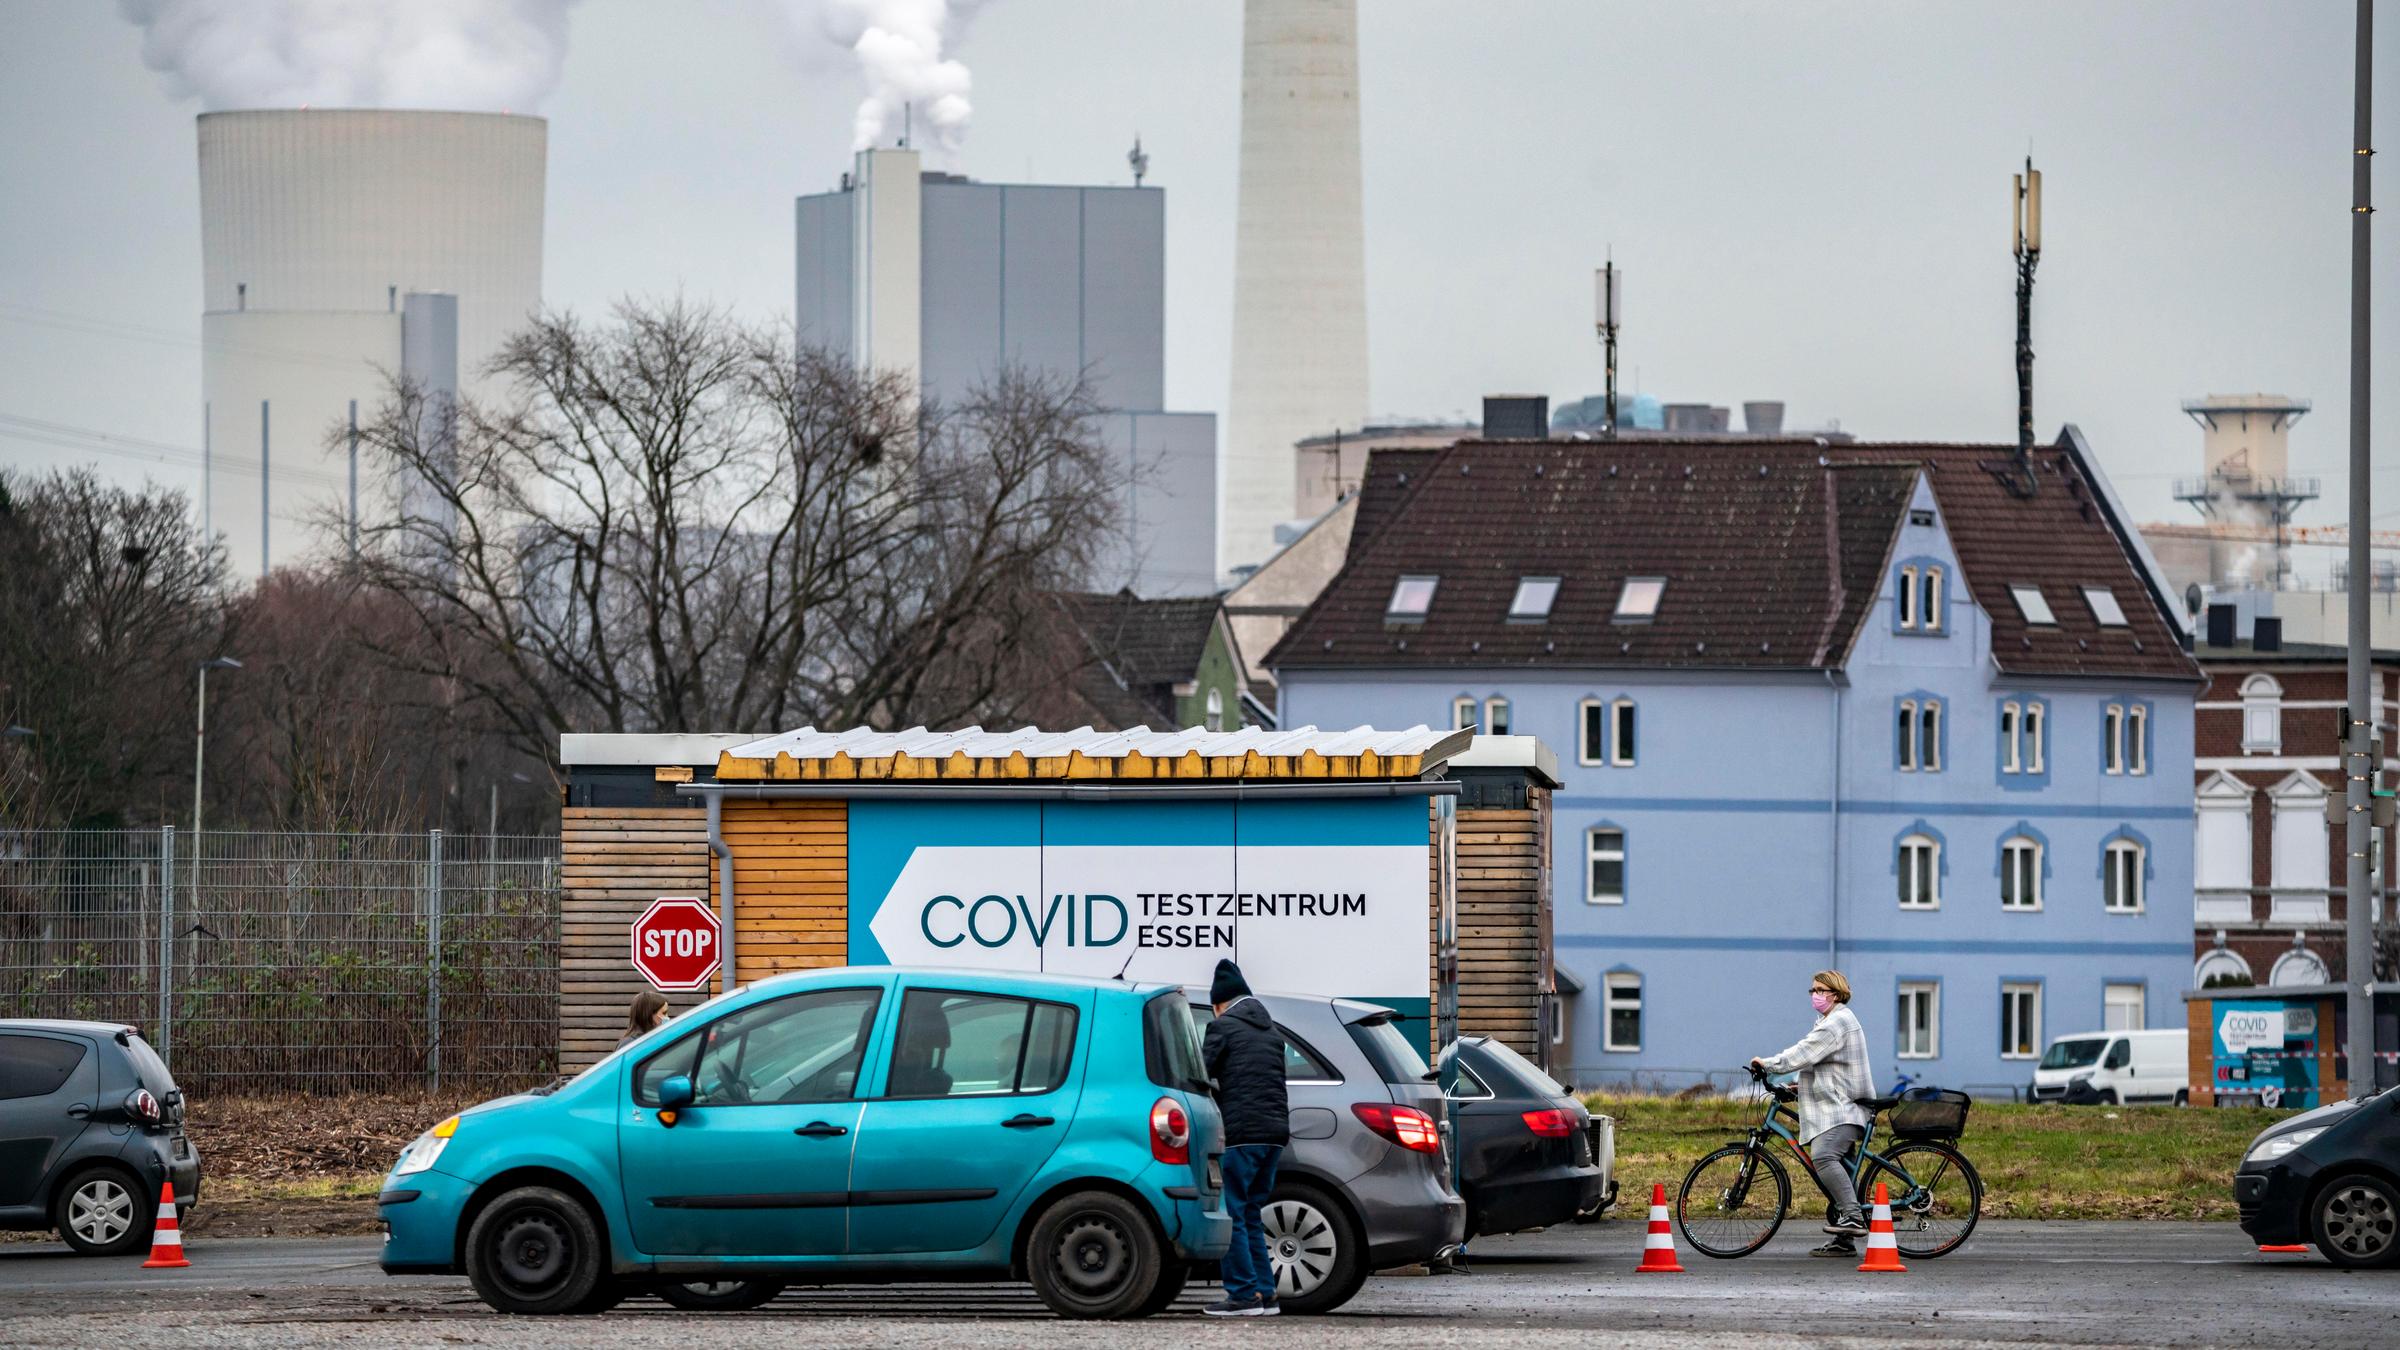 Corona-Drive-In-Testzentrum im Ruhrgebiet: Im Vordergrund sind Autos un...</p>

                        <a href=